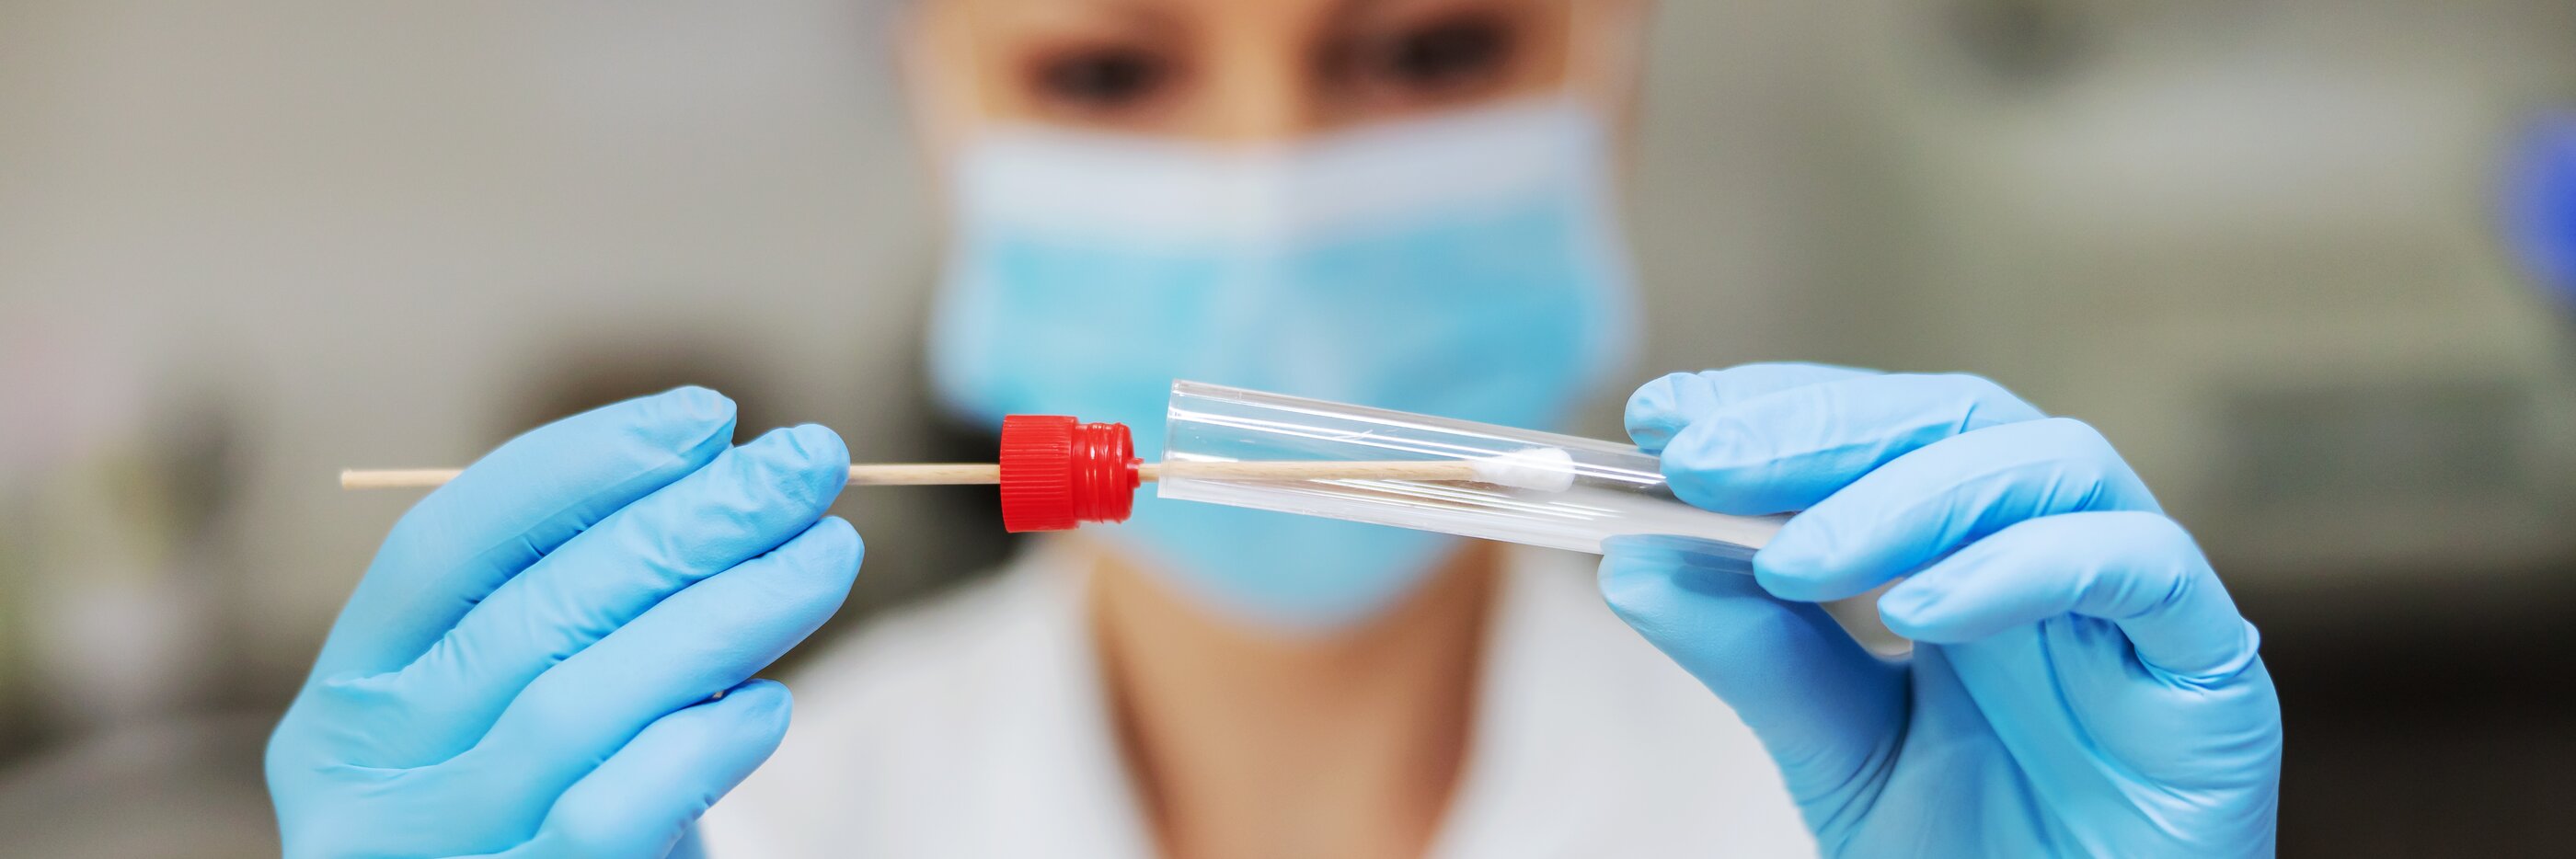 Imagebild zeigt die Anwendung eines medizinischen Test für SARS-CoV-2, vertrieben von MIKKA GmbH